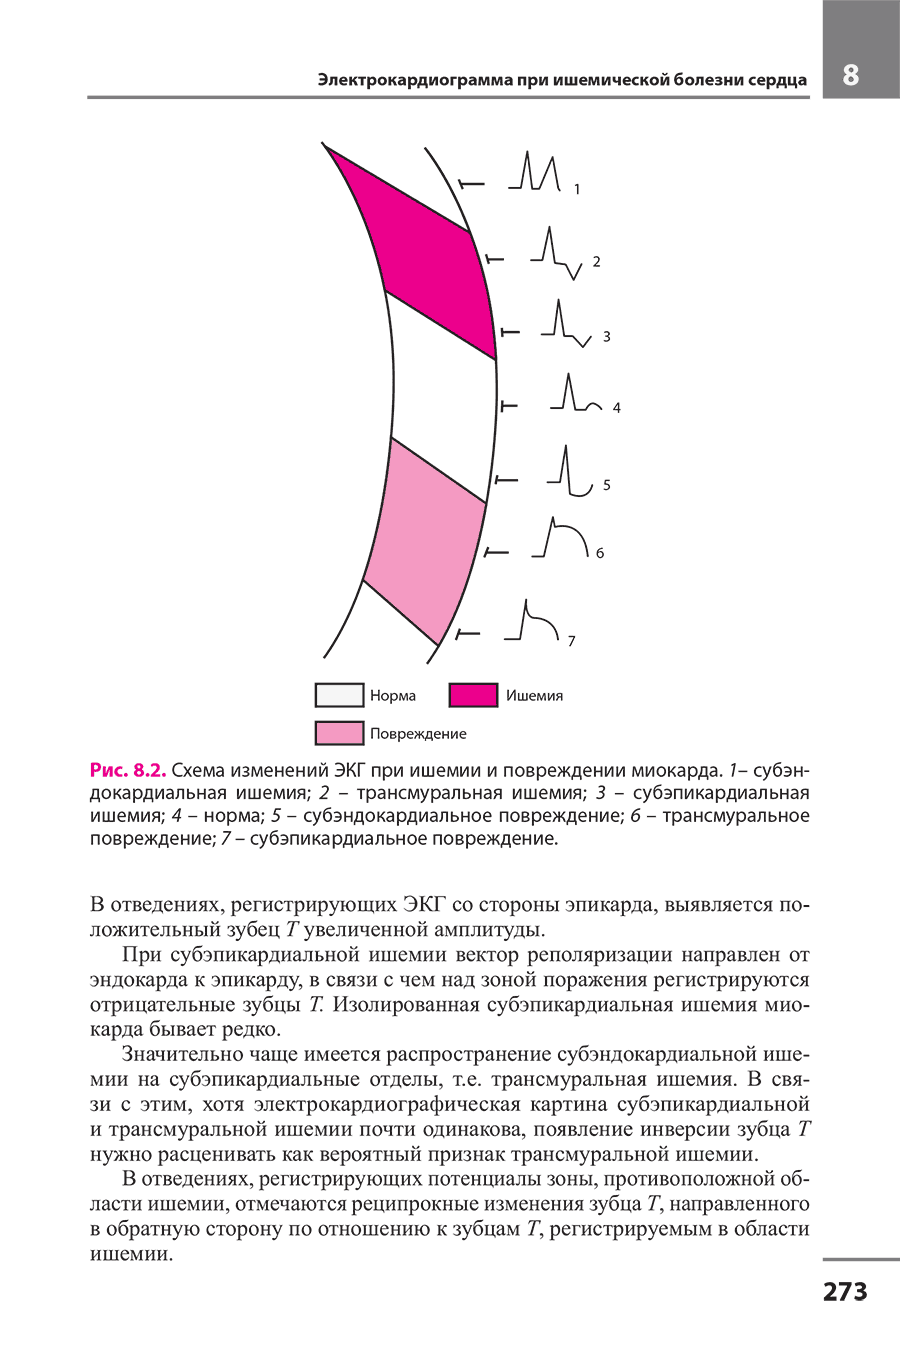 Рис. 8.2. Схема изменений ЭКГ при ишемии и повреждении миокарда.